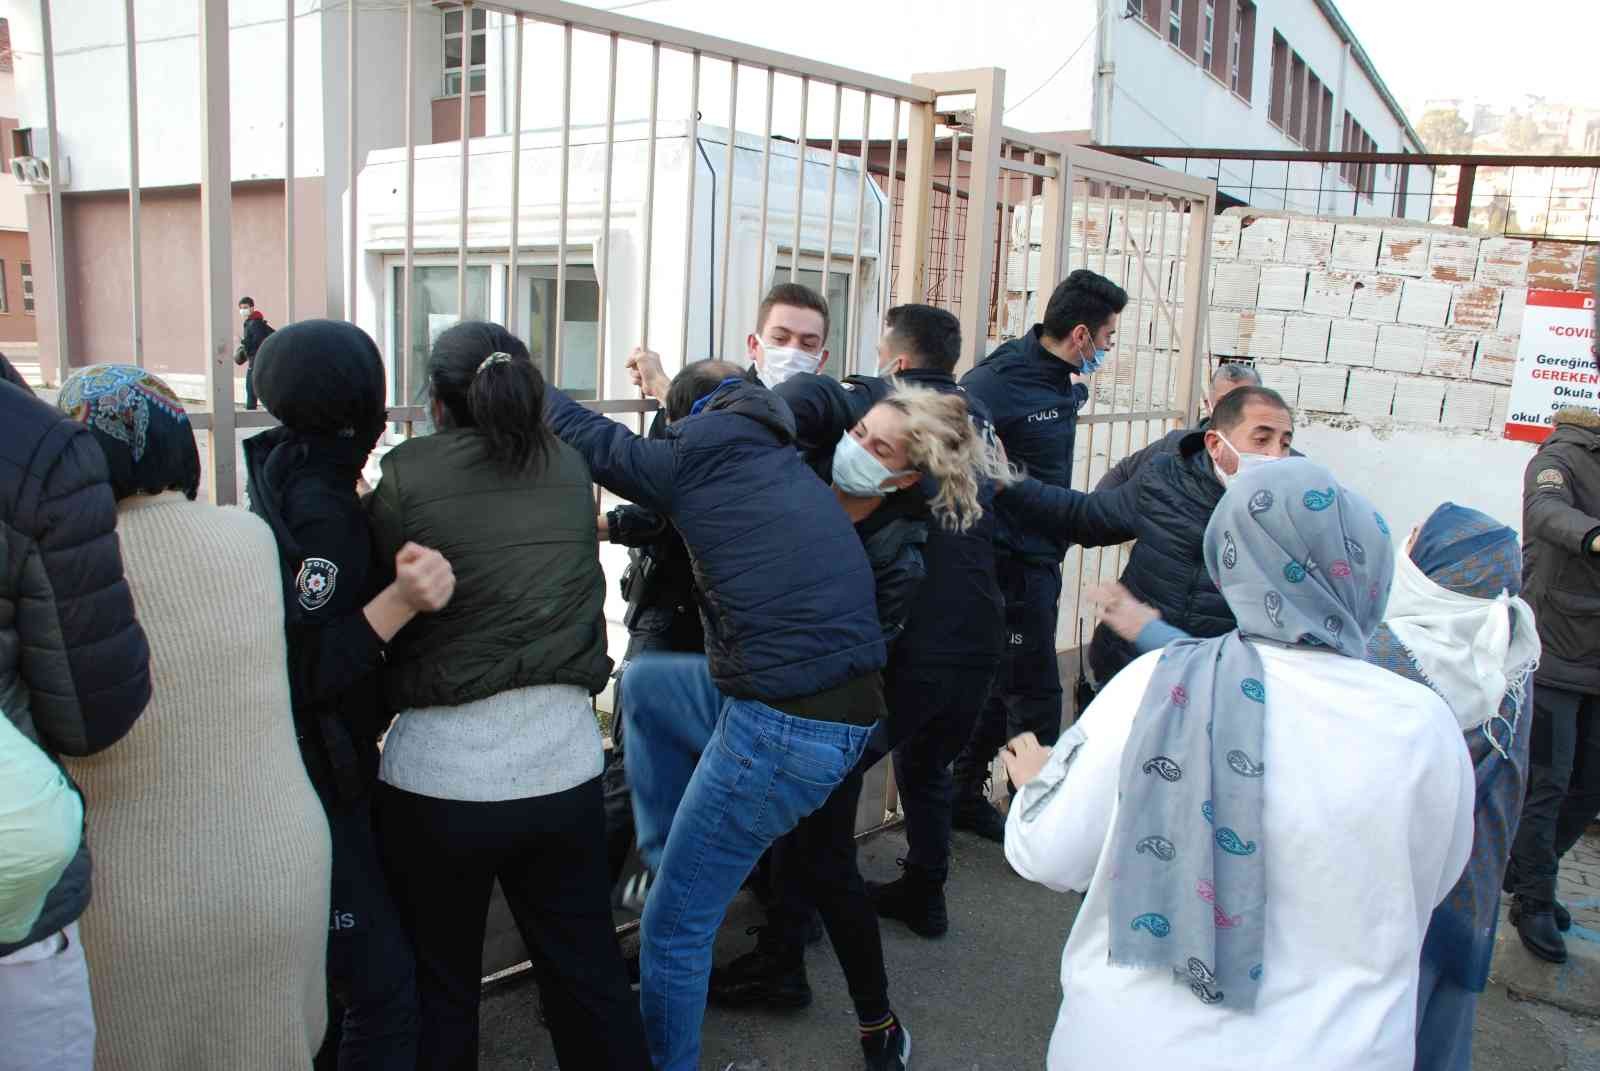 İzmir’de öğrencilere taciz iddiasında yeni gelişme: İdari soruşturma başlatıldı #izmir